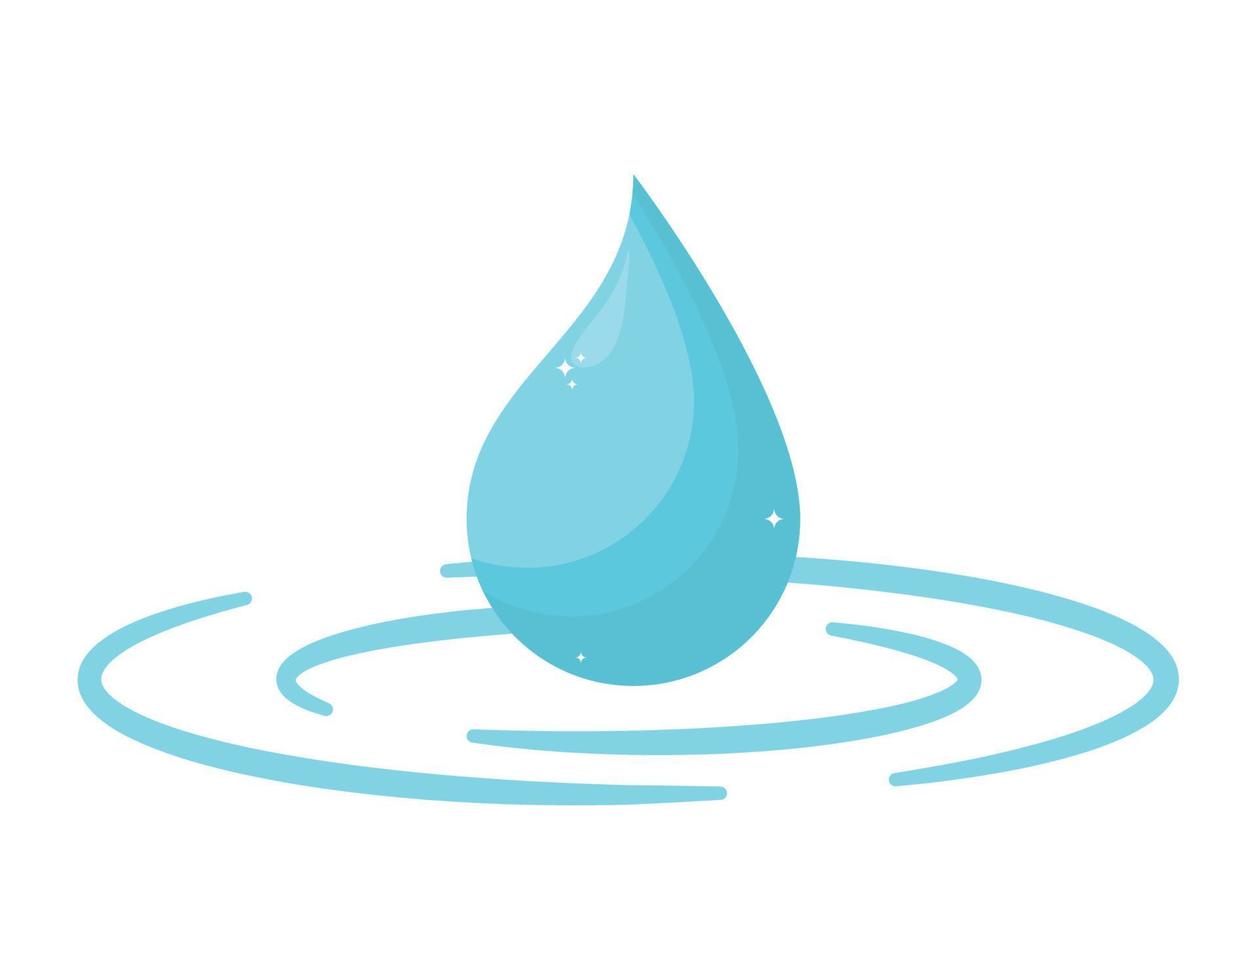 water drop design vector